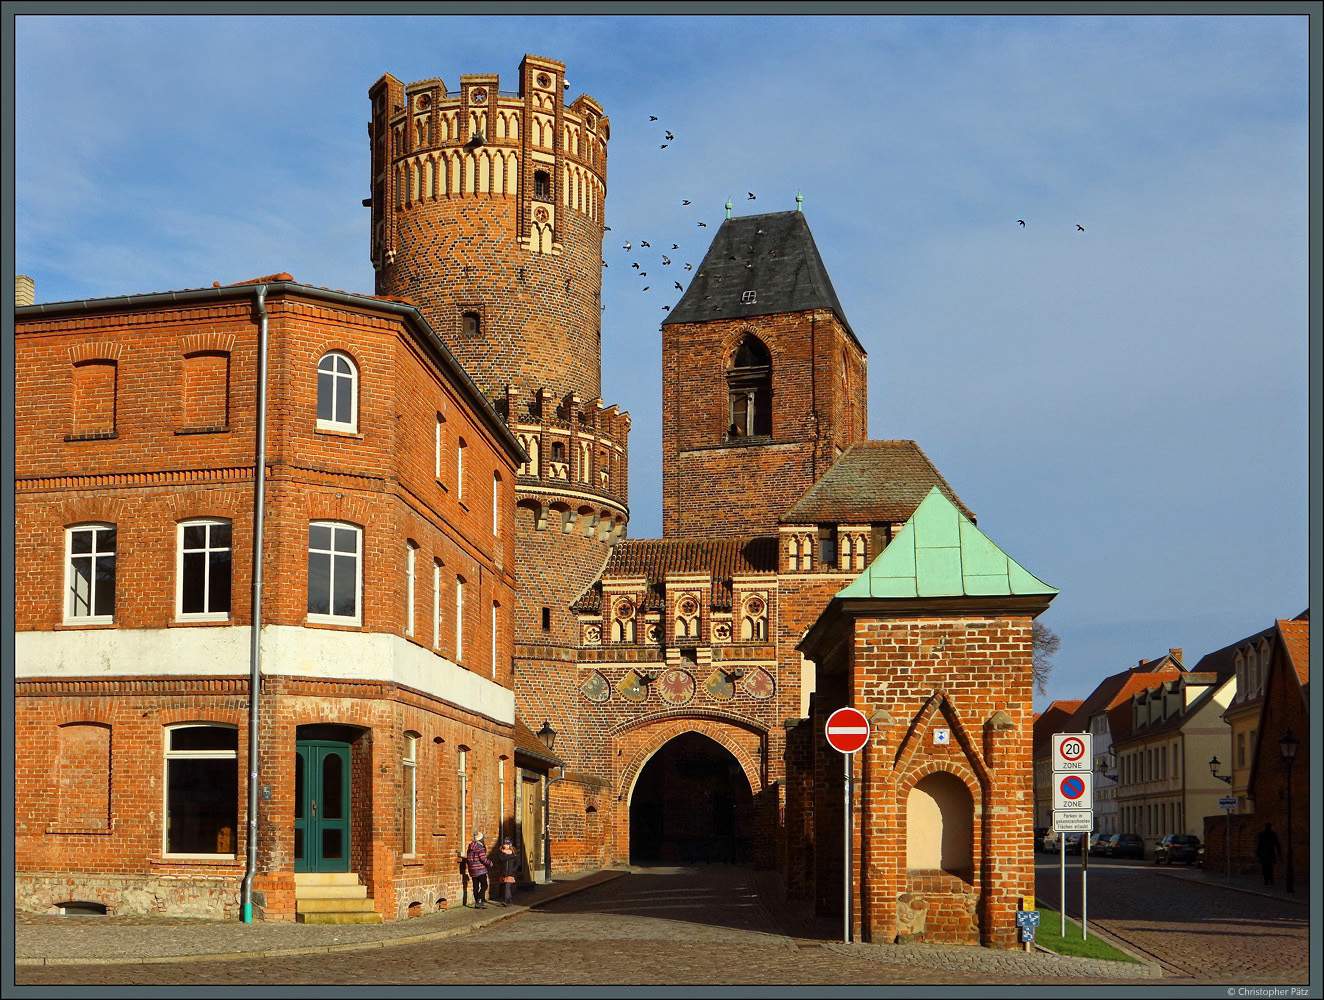 Das Neustädter Tor in Tangermünde zählt zu den eindrucksvollen Bauten der Backsteingotik. Die Toranlage wurde in mehreren Bauphasen ab 1300 errichtet. Dahinter erhebt sich der Turm der ehemaligen Nikolaikirche. (05.02.2023)